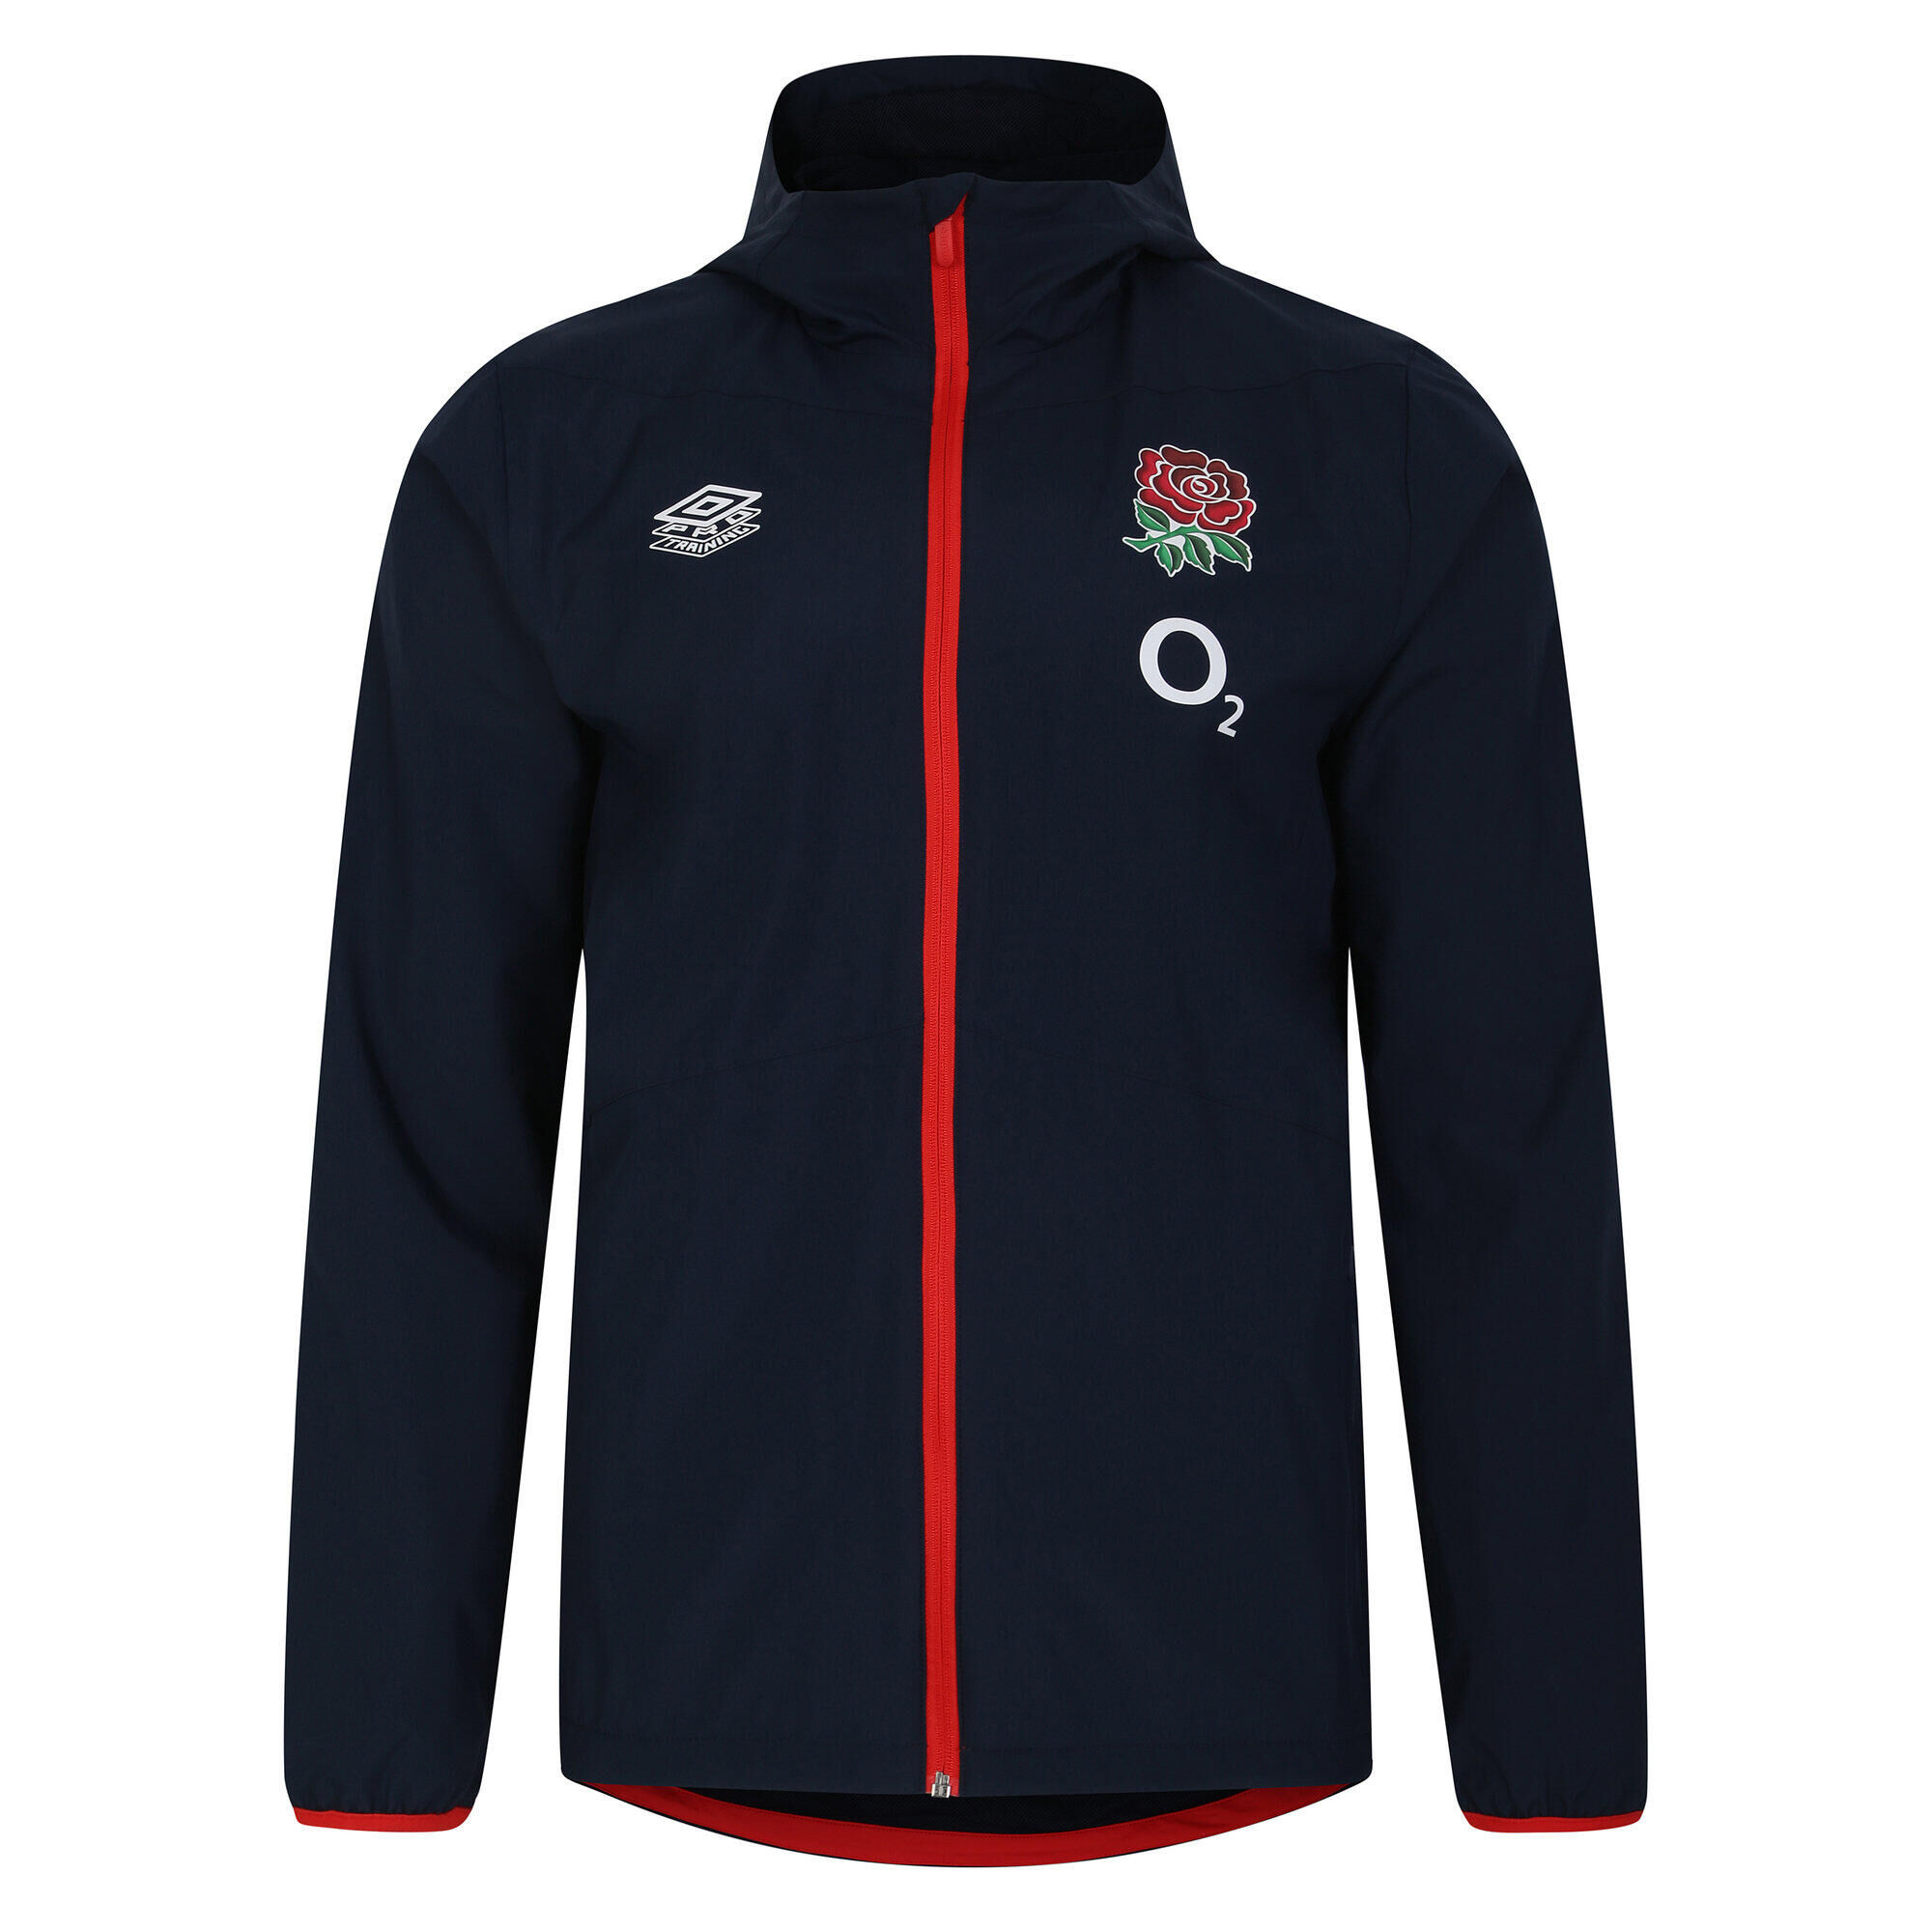 UMBRO Mens 23/24 England Rugby Track Jacket (Navy Blazer/Flame Scarlet)